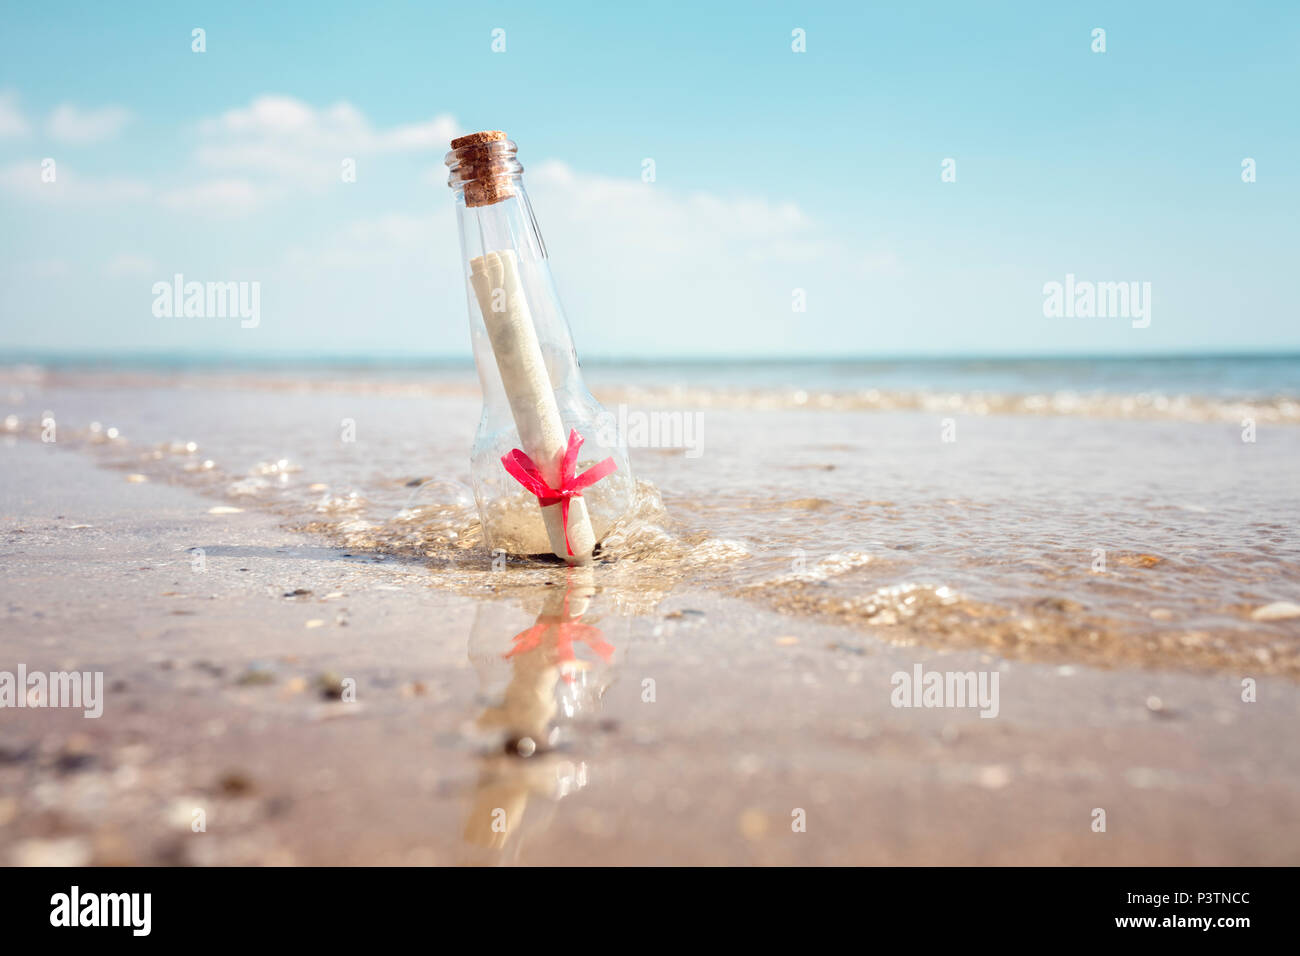 Eine Flaschenpost angespült auf einem Strand Konzept für Hilfe, sos, Notfall und Hilfe Stockfoto